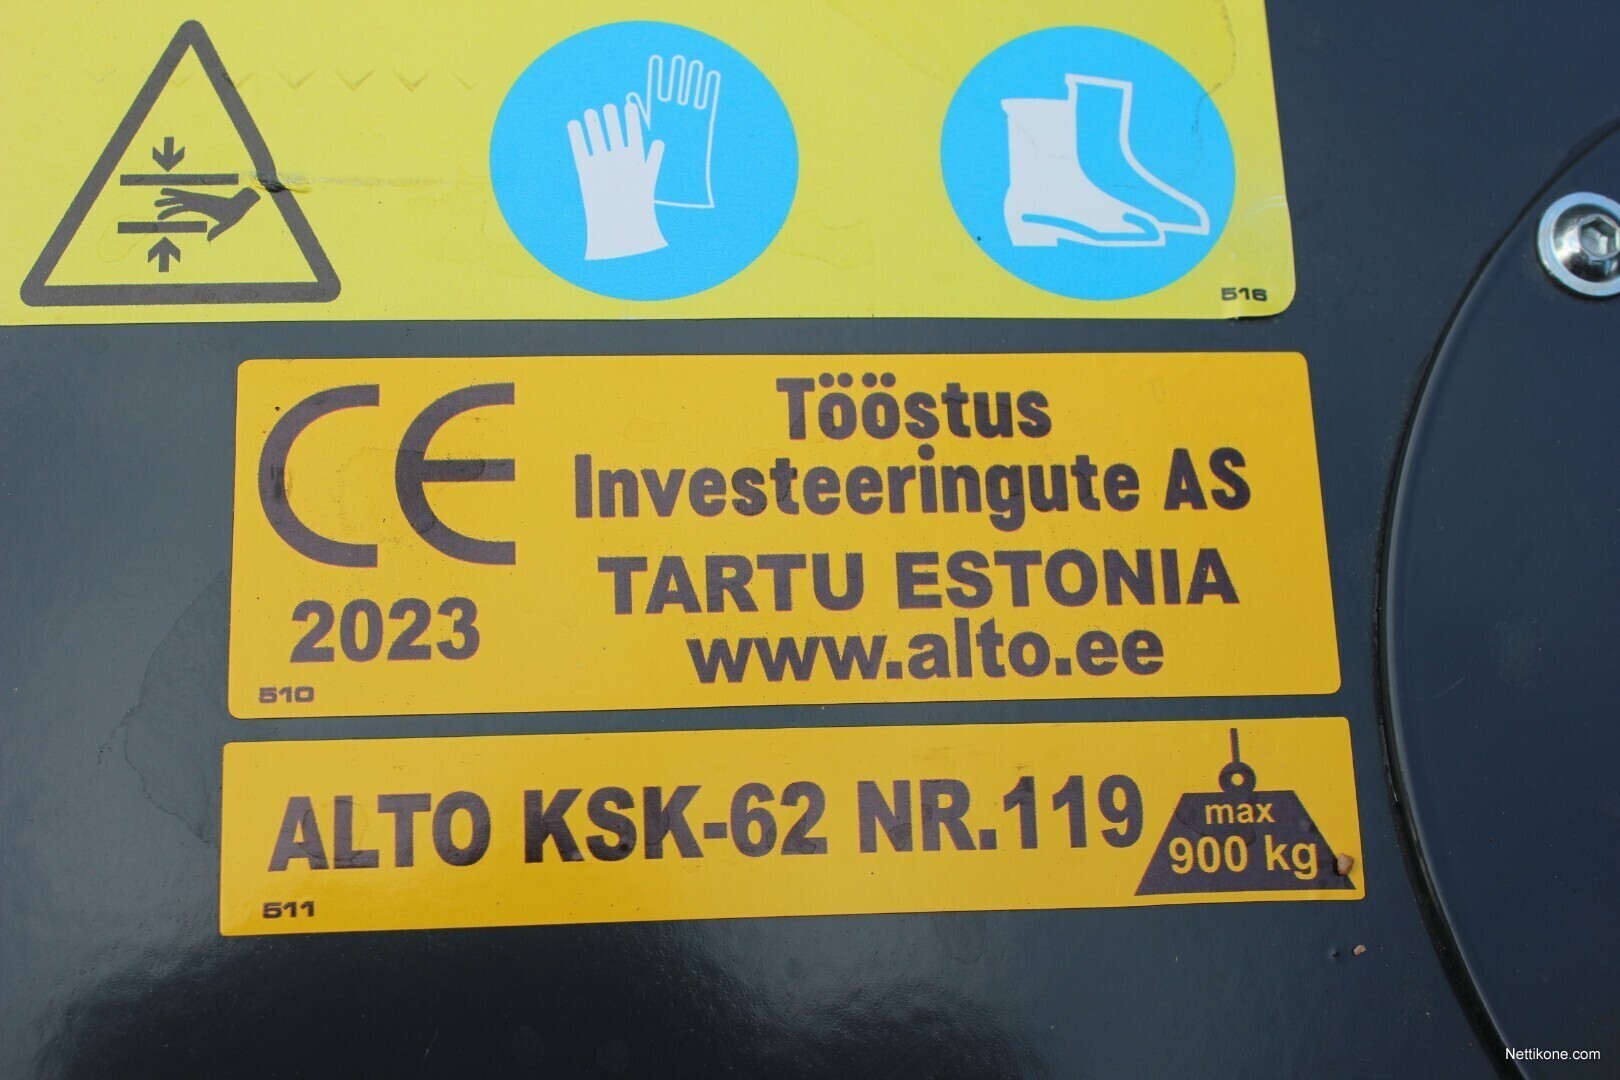 Muu merkki ALTO KSK-62 ketjusahakone puun ja polttopuun käsittely, 2023 -  Nettikone